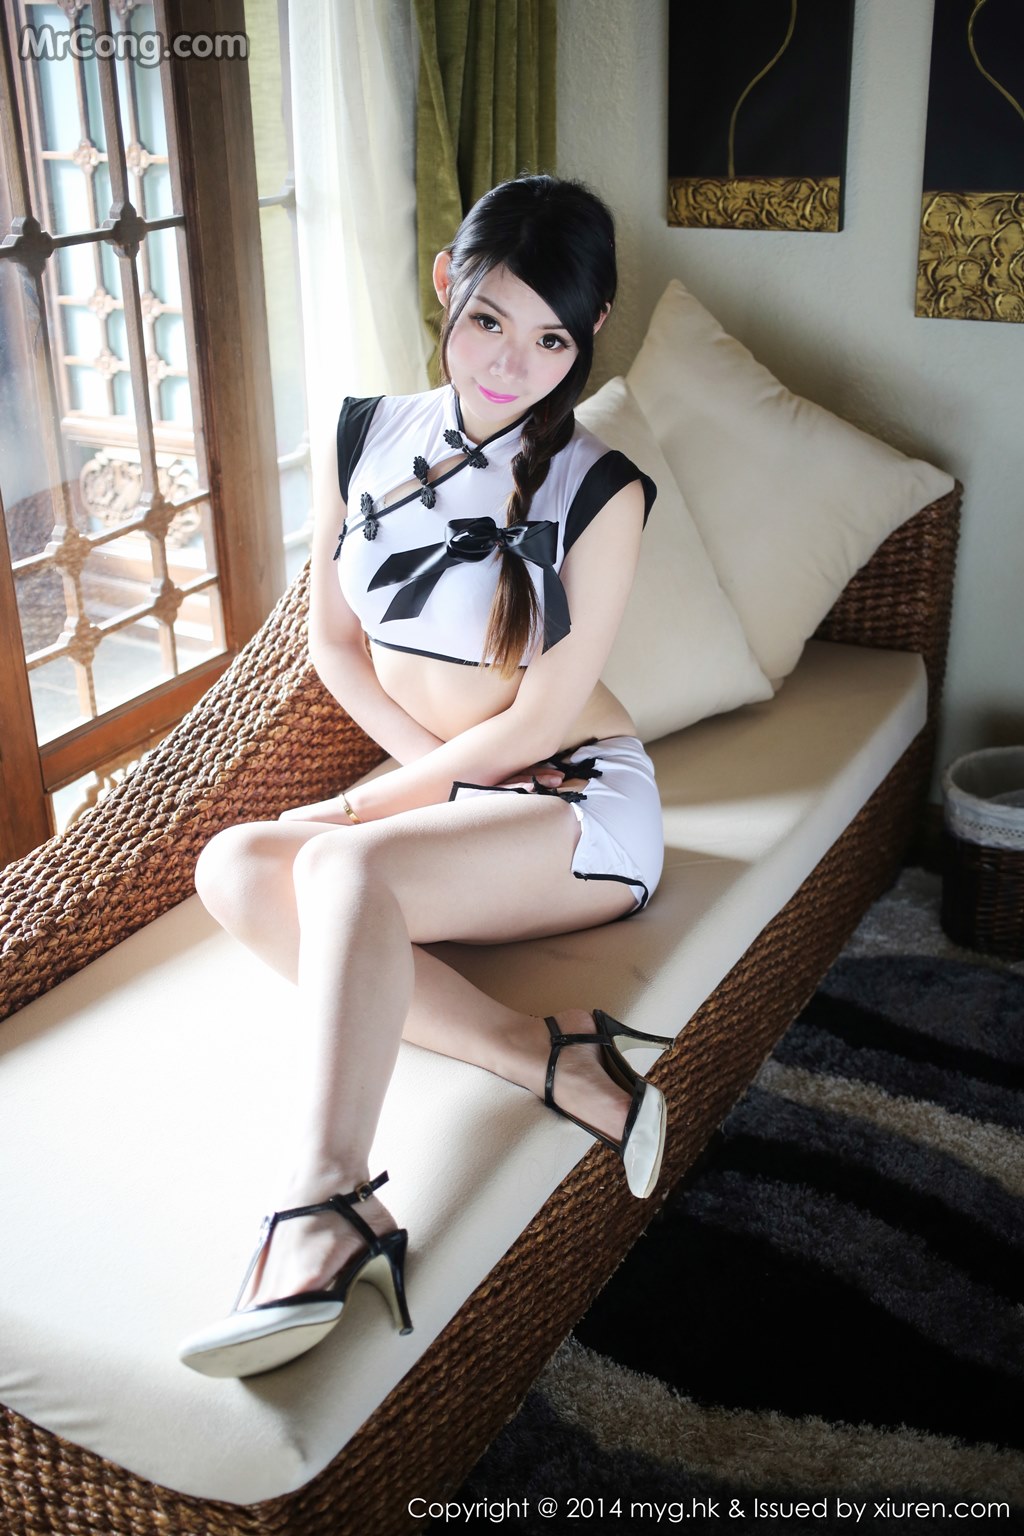 MyGirl Vol.071: Model Mara Jiang (Mara 酱) (54 photos)